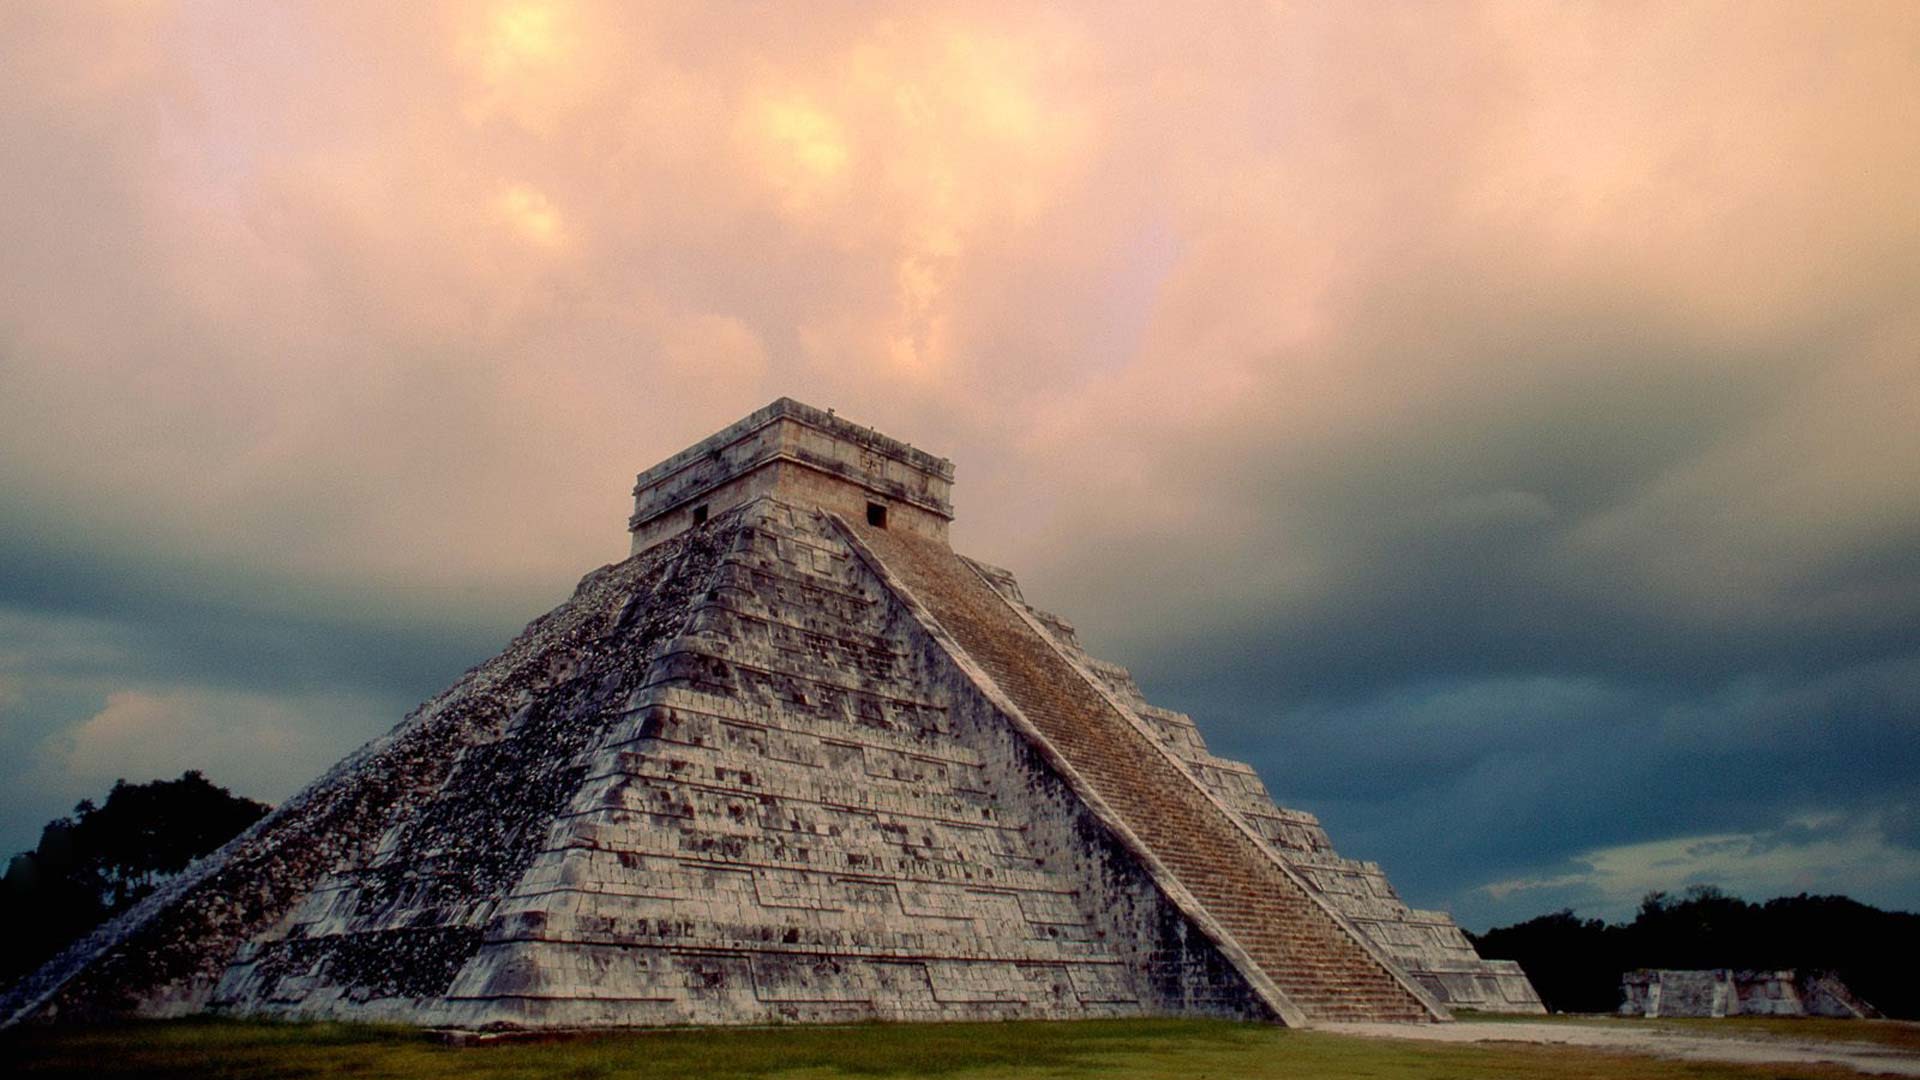 Chichen Itza, Yucatan State, Mexico built